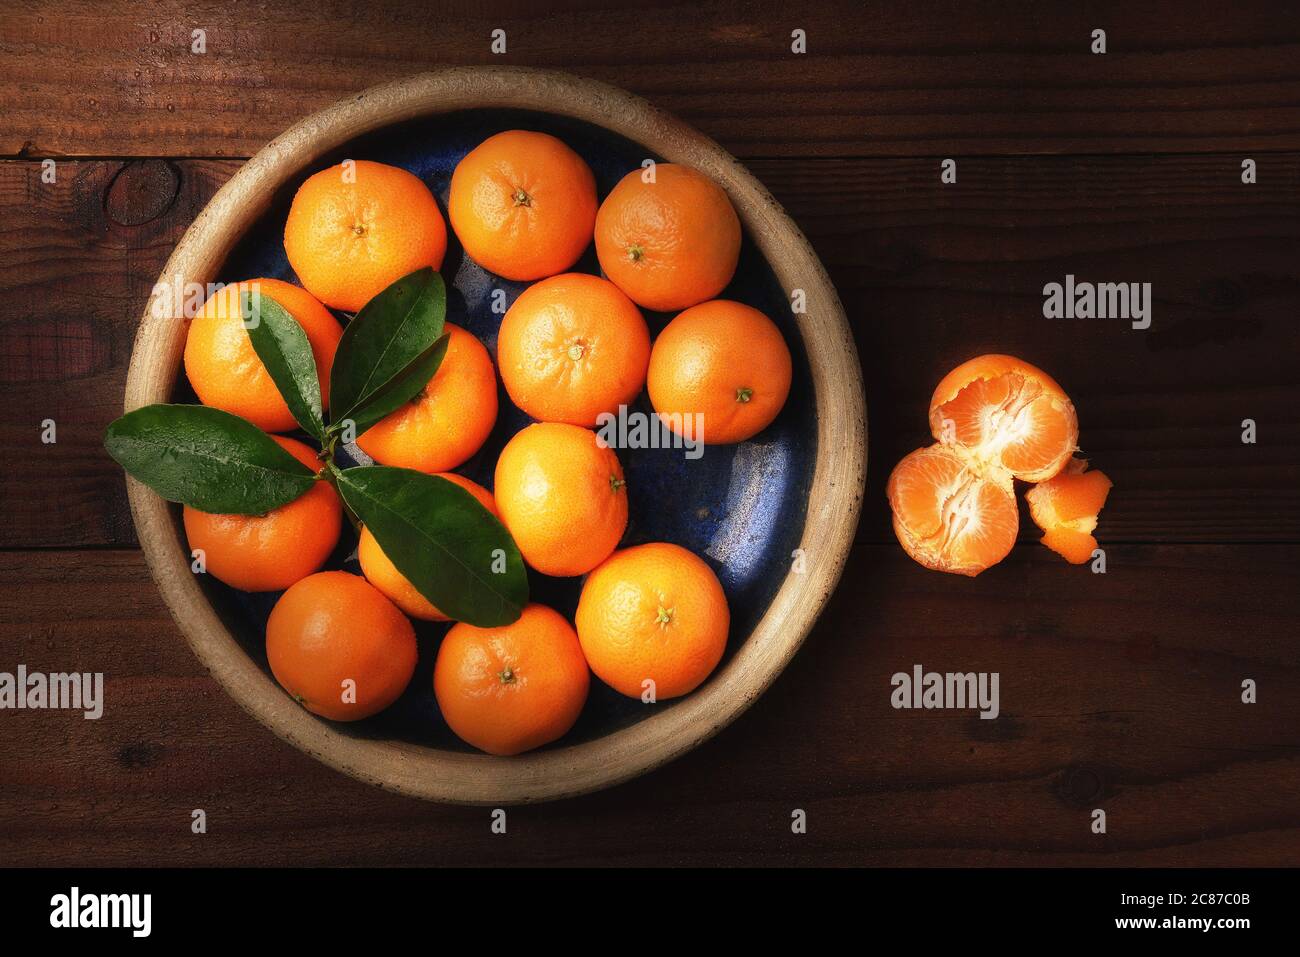 Immagine piatta di un piatto di arance mandarine fresche selezionate in un tavolo rustico in legno con un pezzo di frutta sbucciata con luce laterale calda. Foto Stock